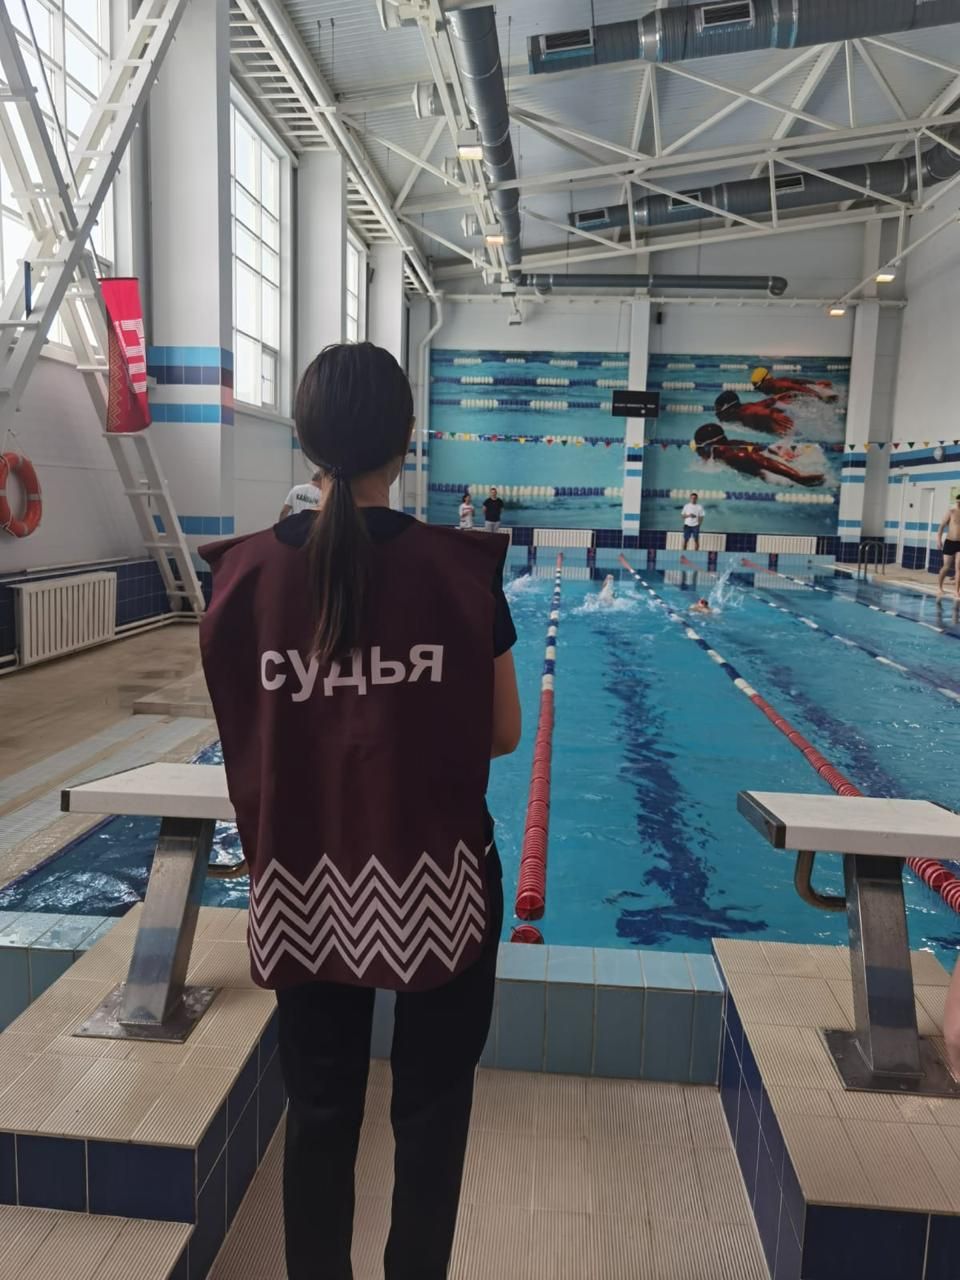 В спортивно-оздоровительном комплексе «Салават купере» прошли межрайонные соревнования по плаванию среди юных спортсменов